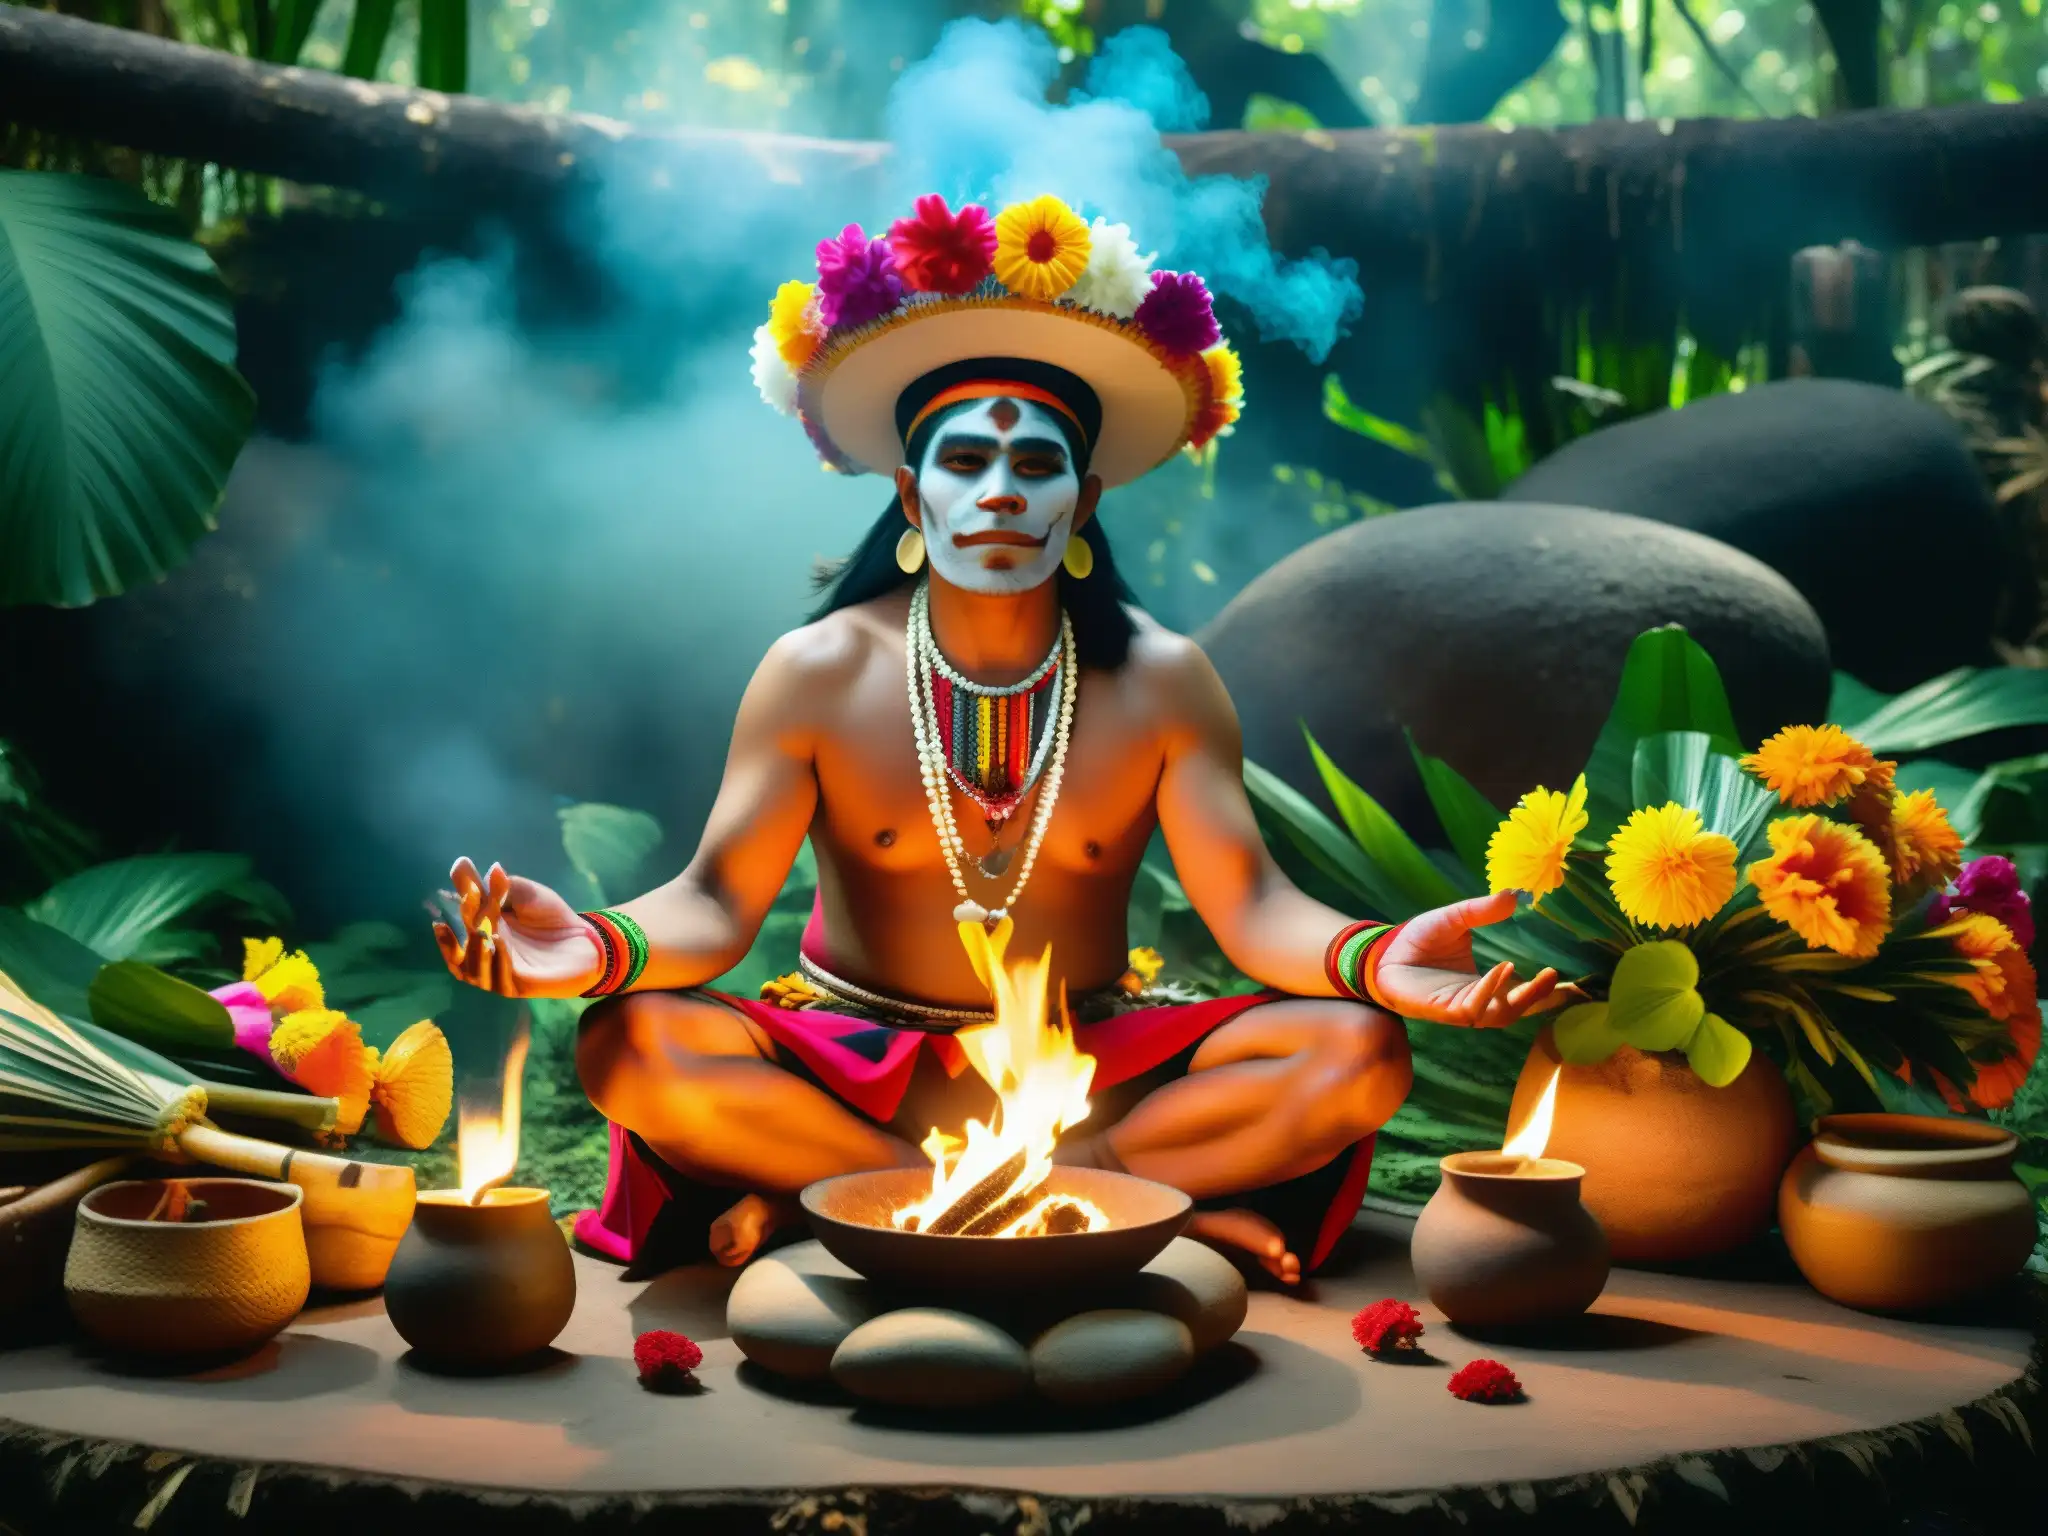 Un chaman mexicano realiza un ritual en la densa selva, envuelto en nahualismo en leyendas indígenas mexicanas